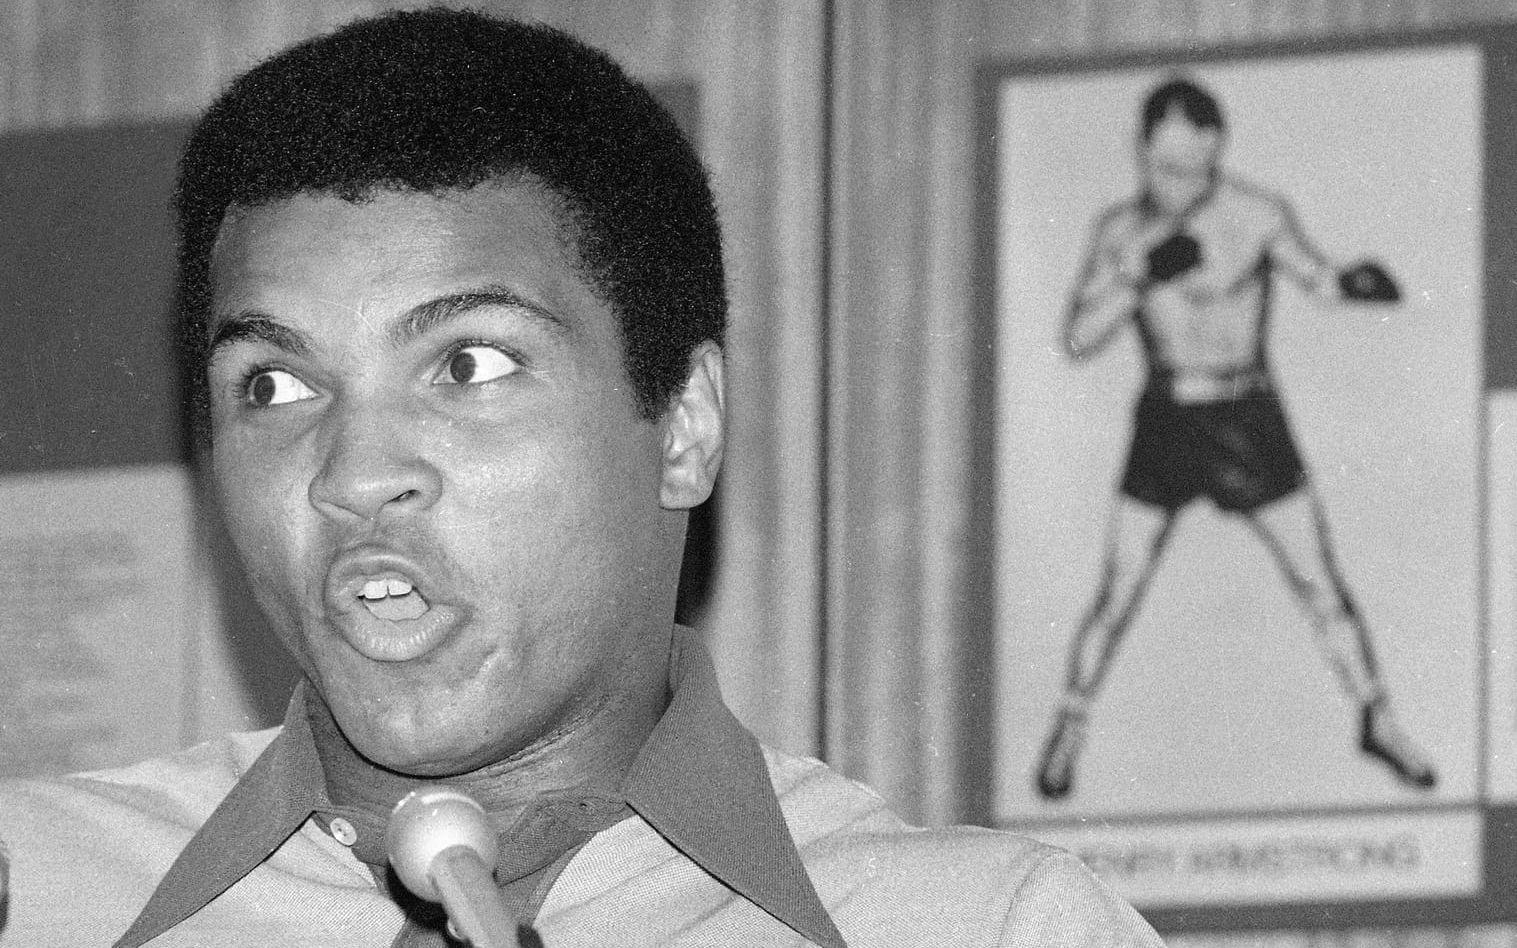 Muhammad Ali, boxningslegend om sin motståndare: "Jag har sett George Foreman skuggboxa och skuggan vann." Foto: TT